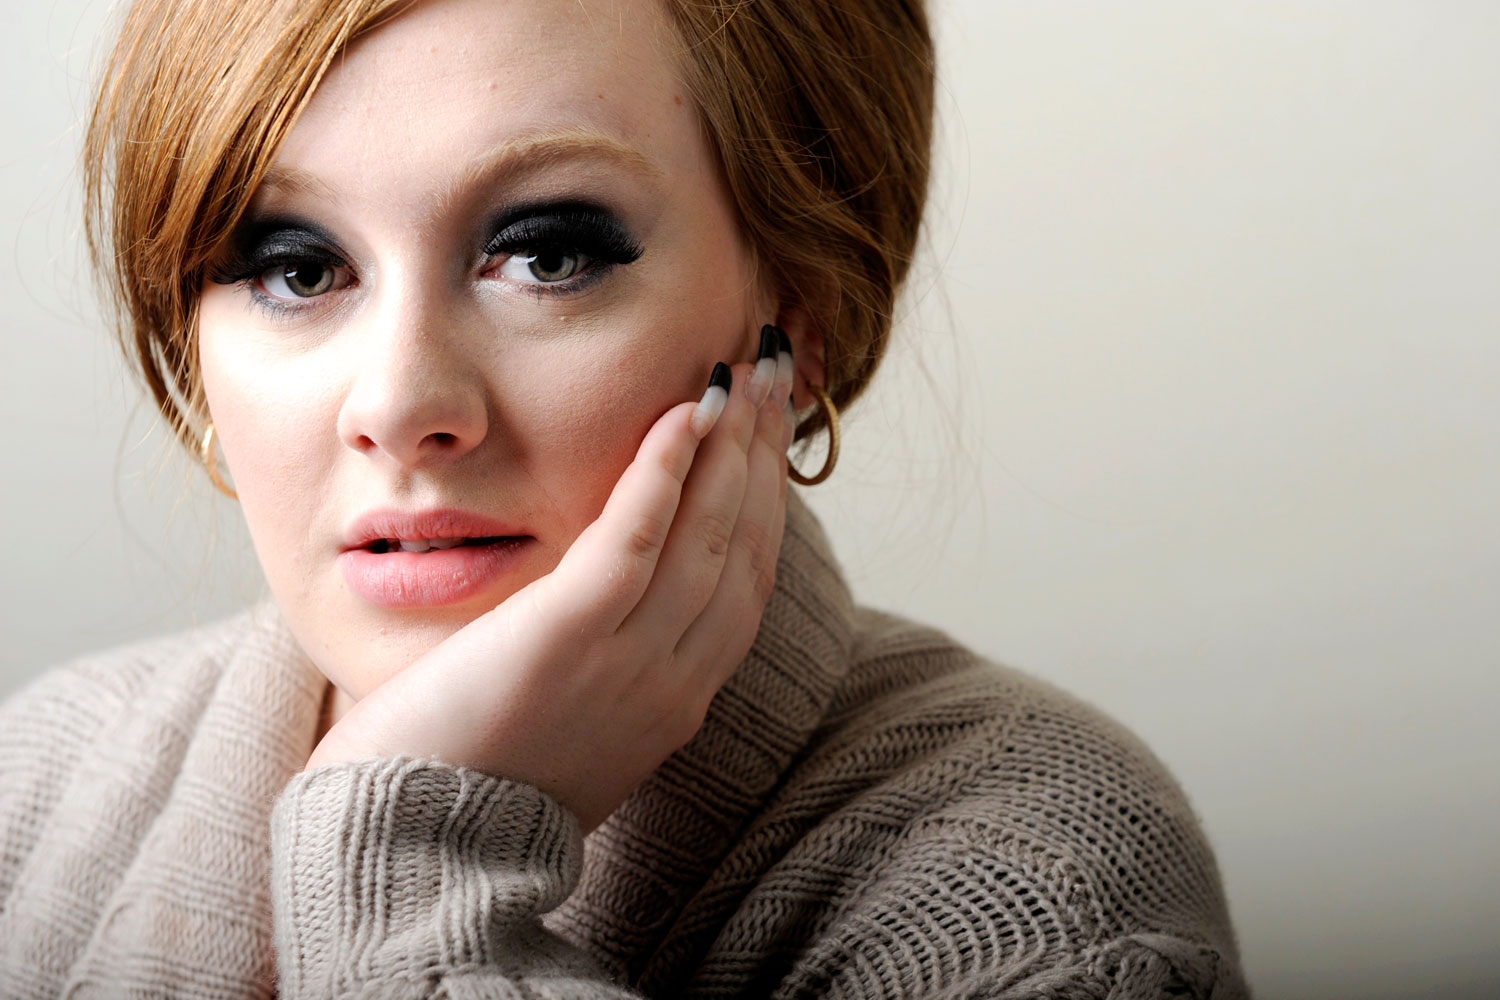 Adele 21 Charts